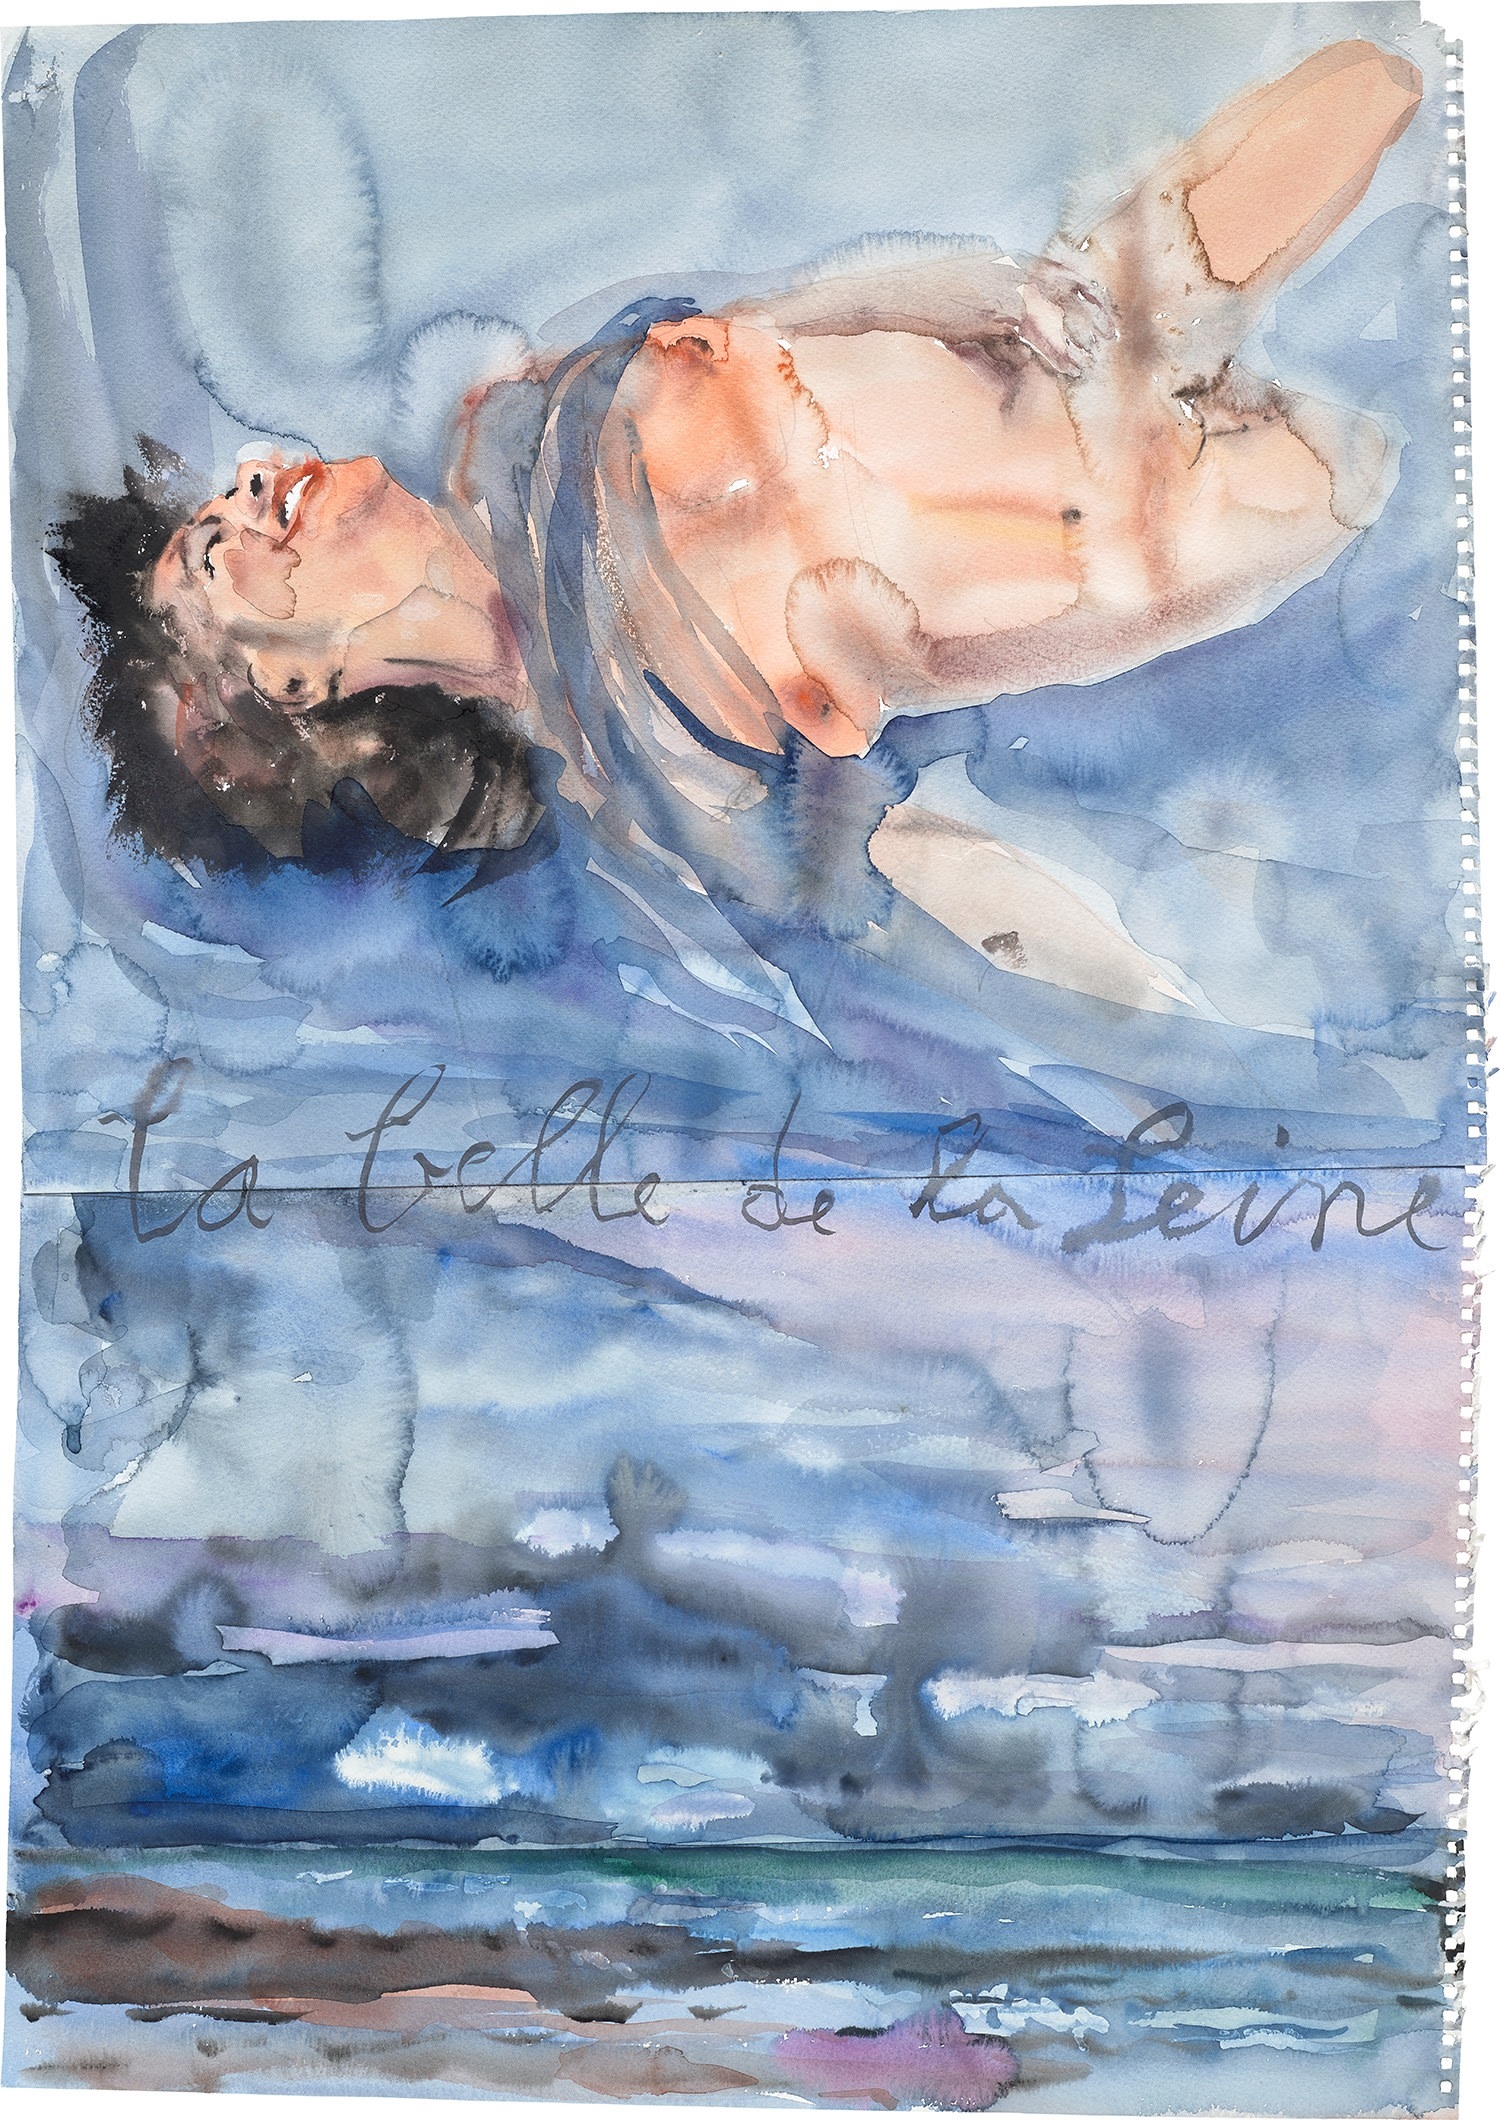 Anselm Kiefer, La belle de la Seine (The Beauty of the Seine) (2013)